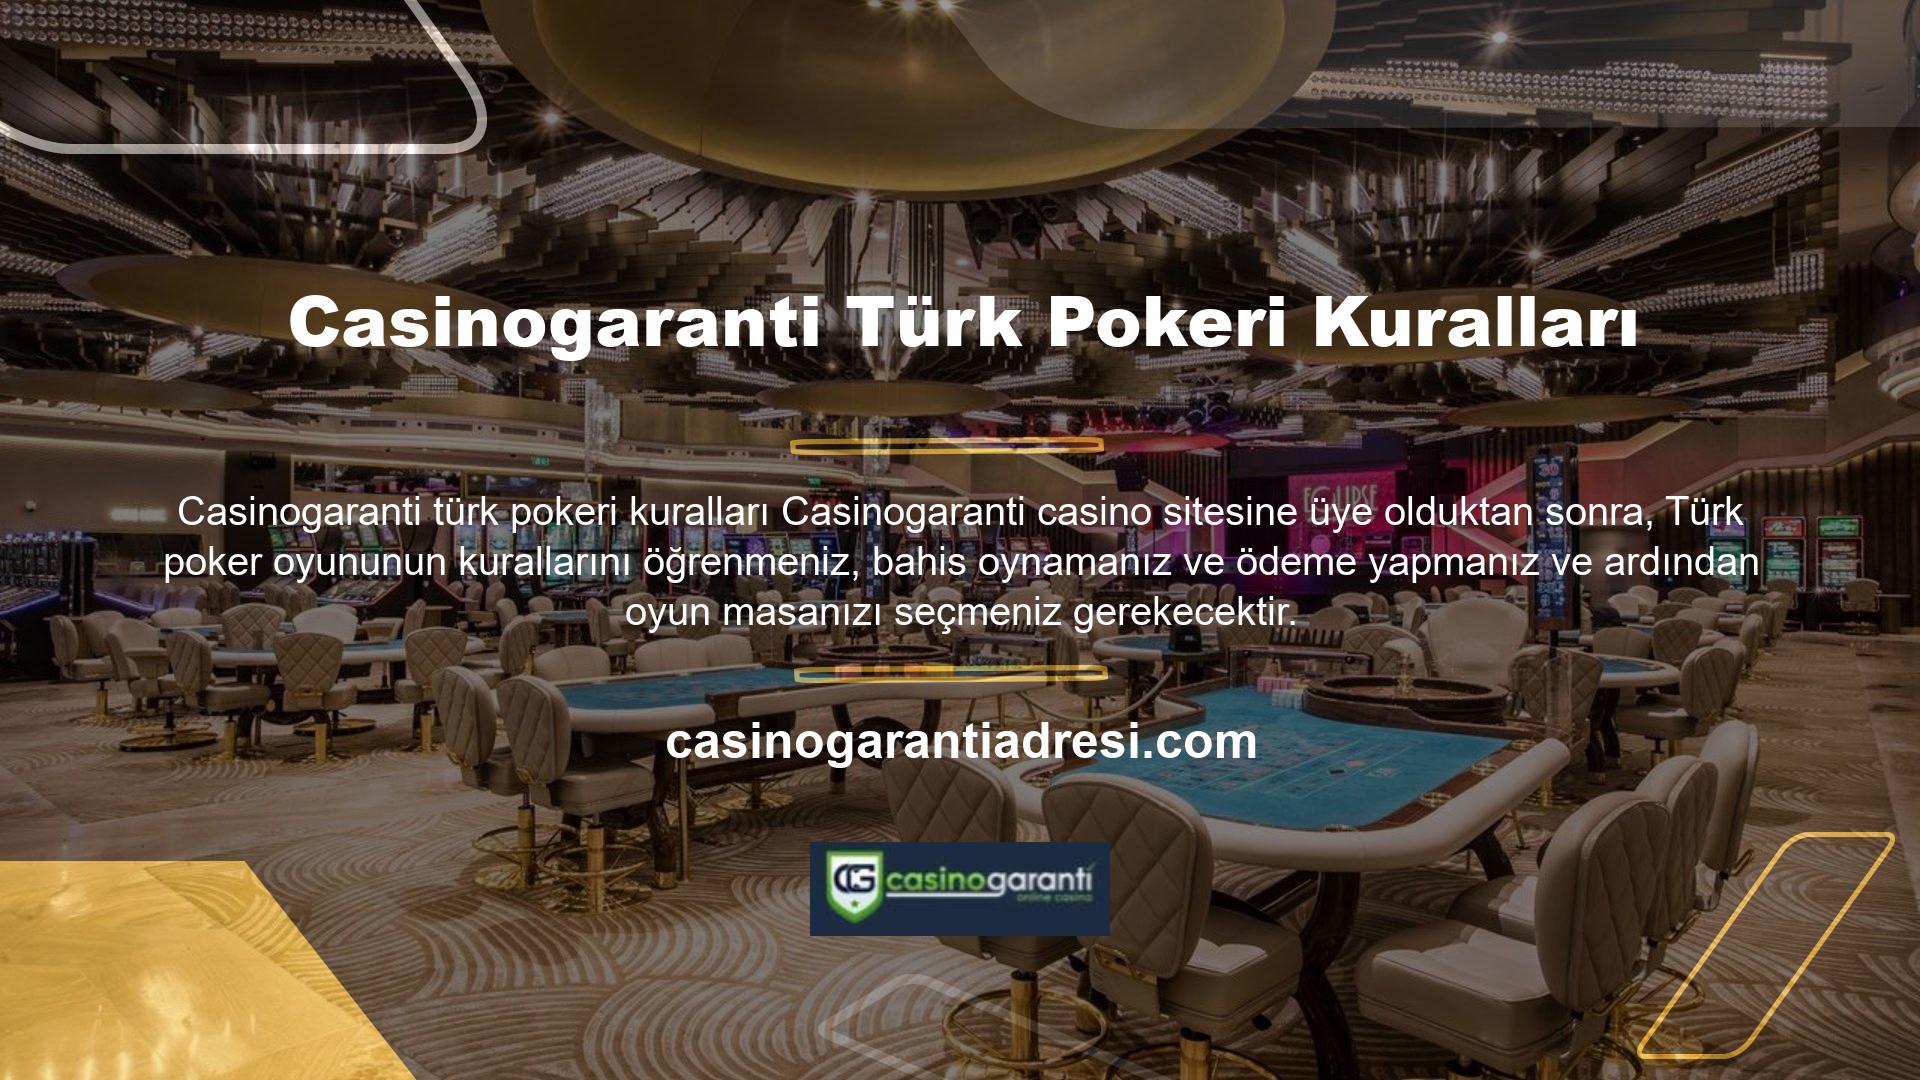 Türk pokerindeki kart sayısı ve seçenekler oyuncu sayısına bağlıdır